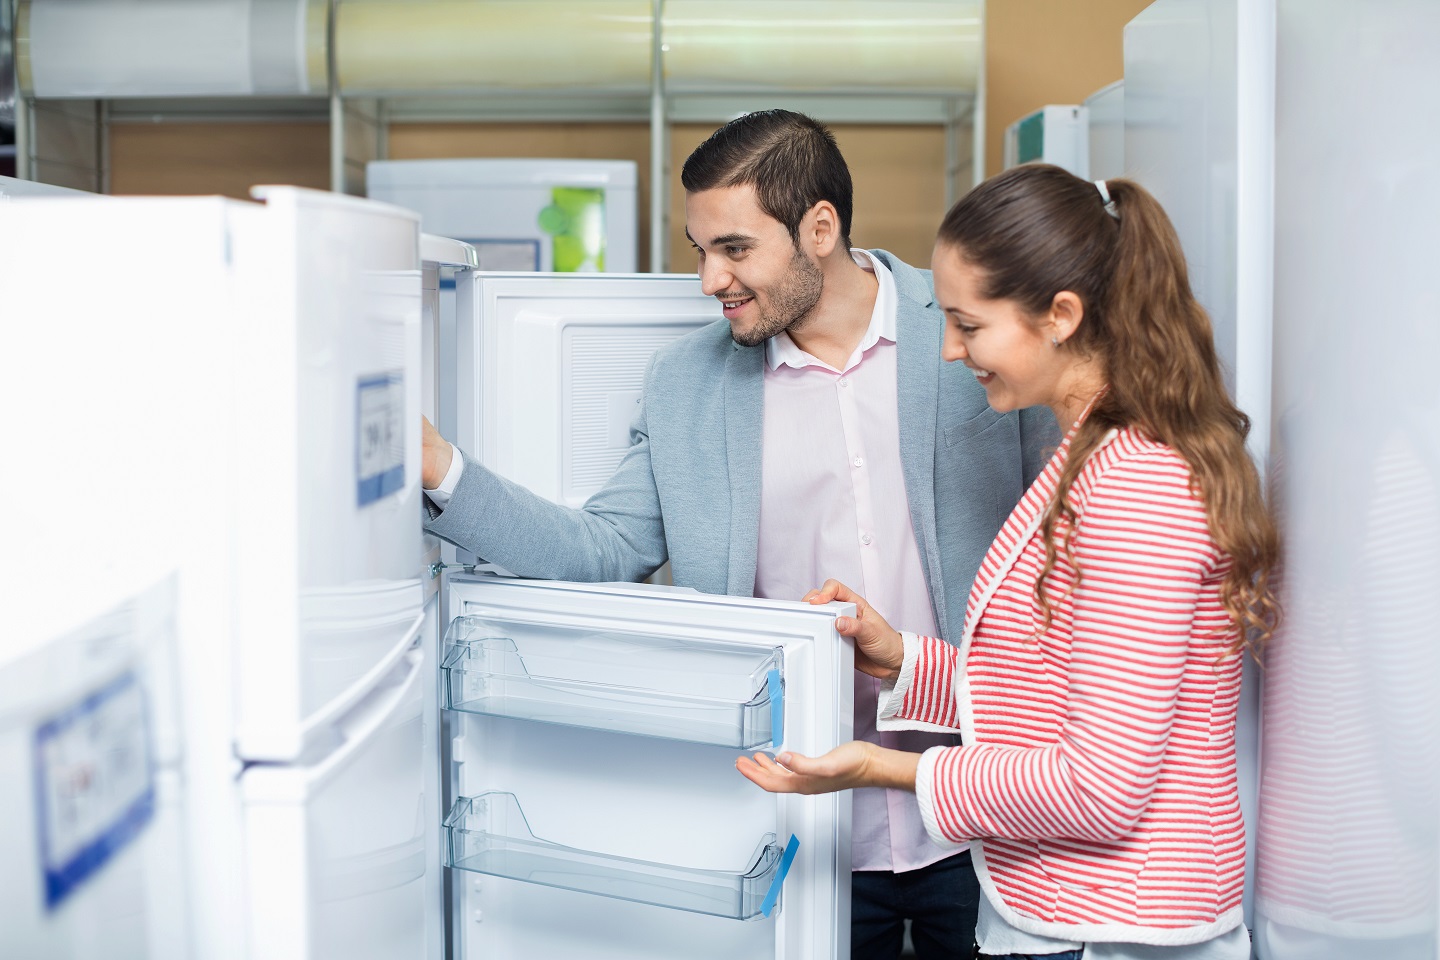 Где Можно Купить Холодильник В Кредит